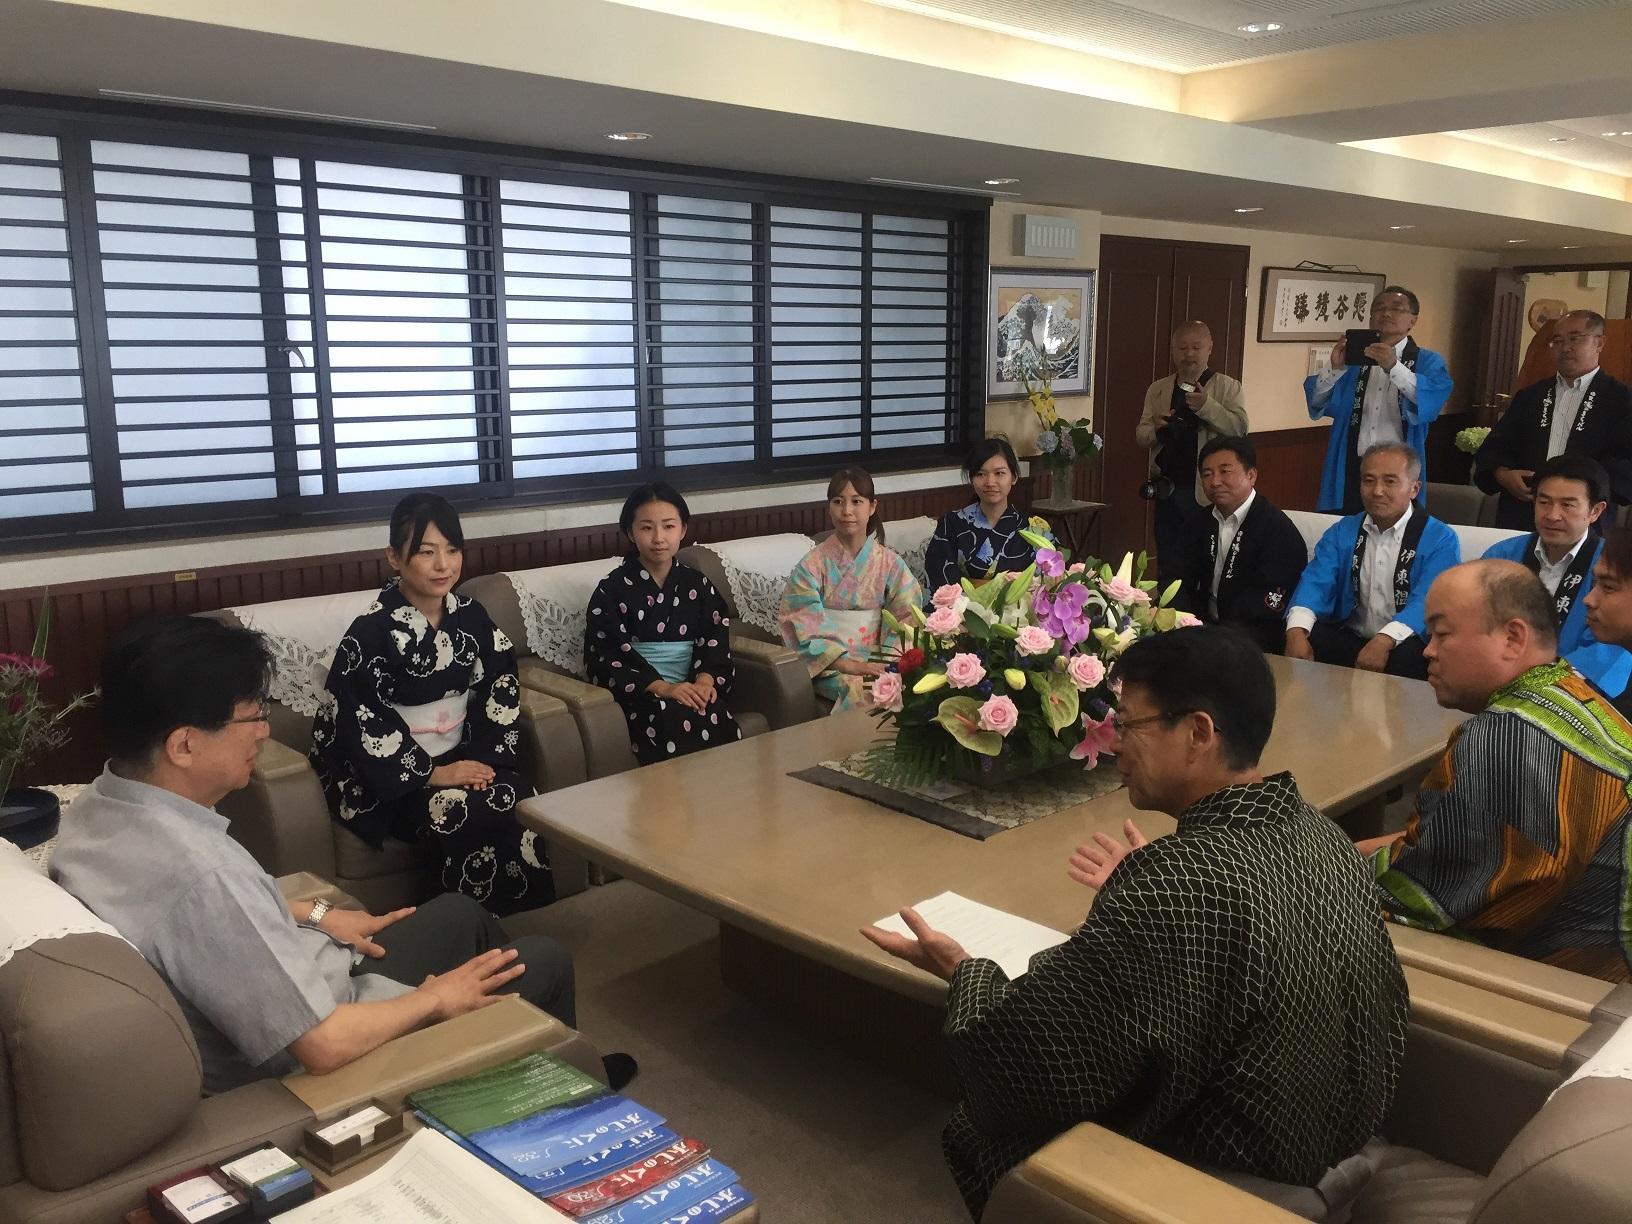 浴衣姿で川勝県知事を表敬訪問した観光関係者の皆様と伊東市長の写真